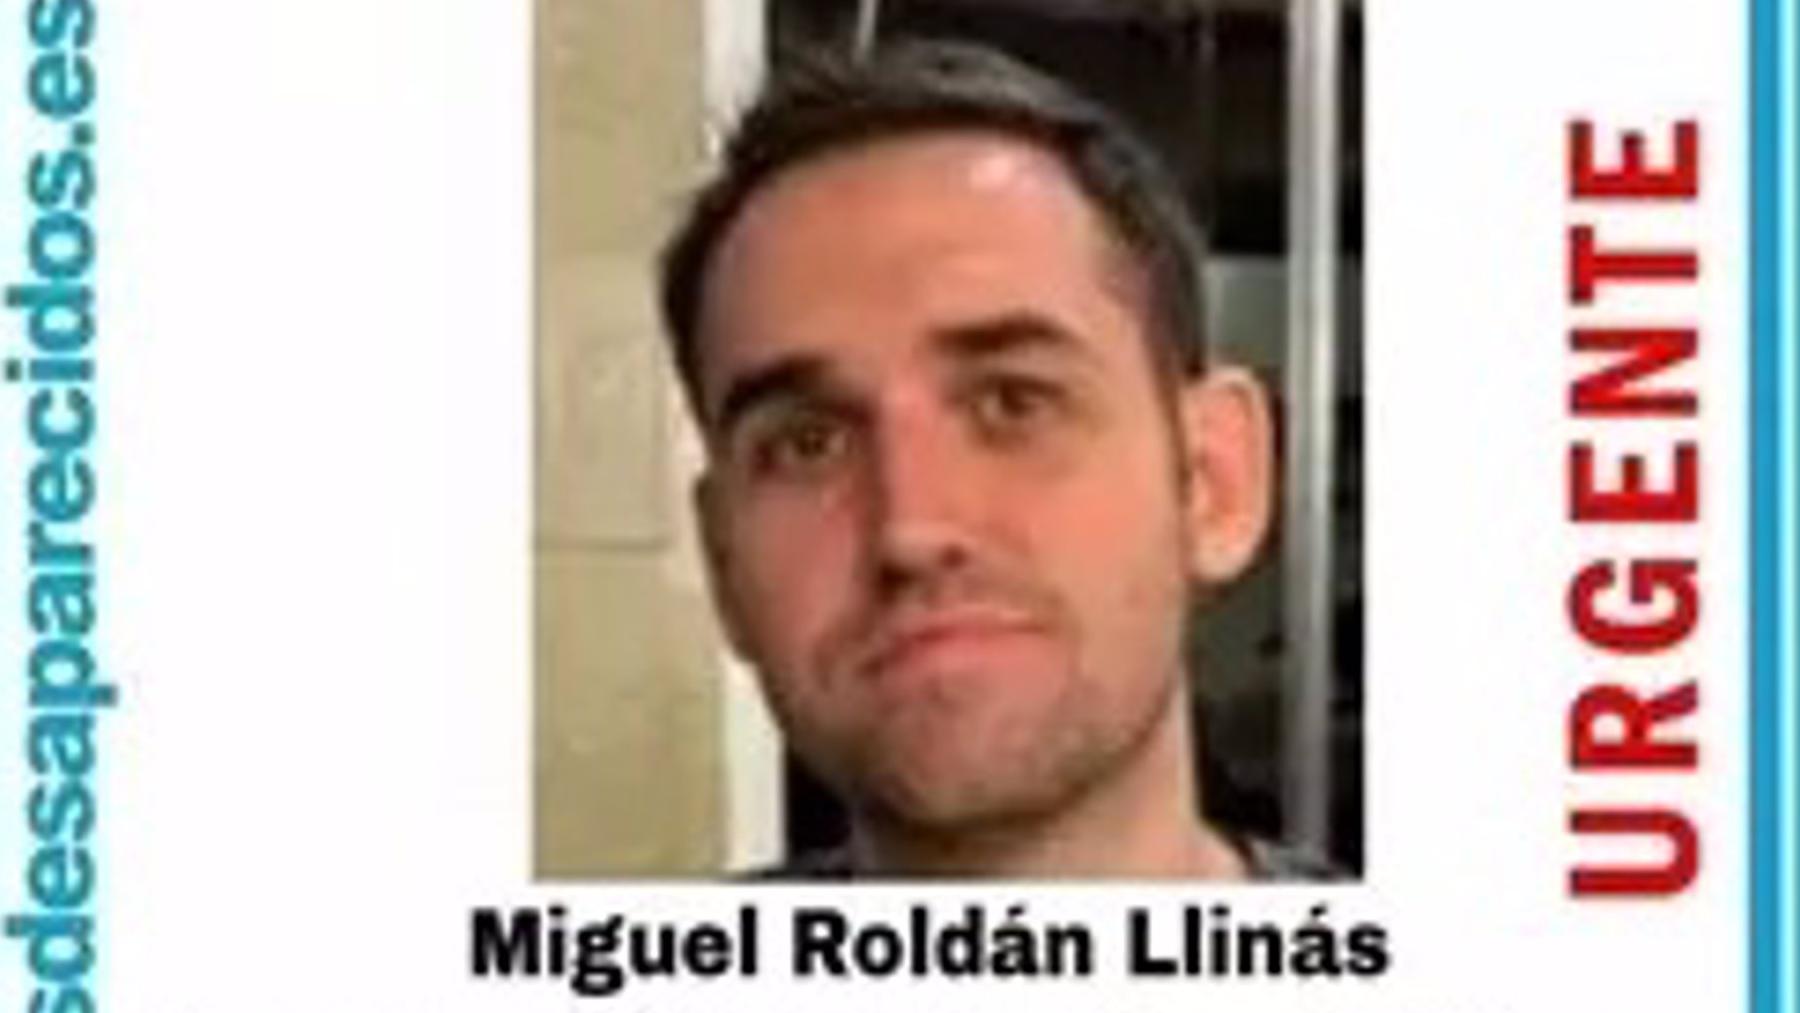 Hallado Miguel Roldán Llinás tras varios días desaparecido. – SOSDESAPARECIDOS